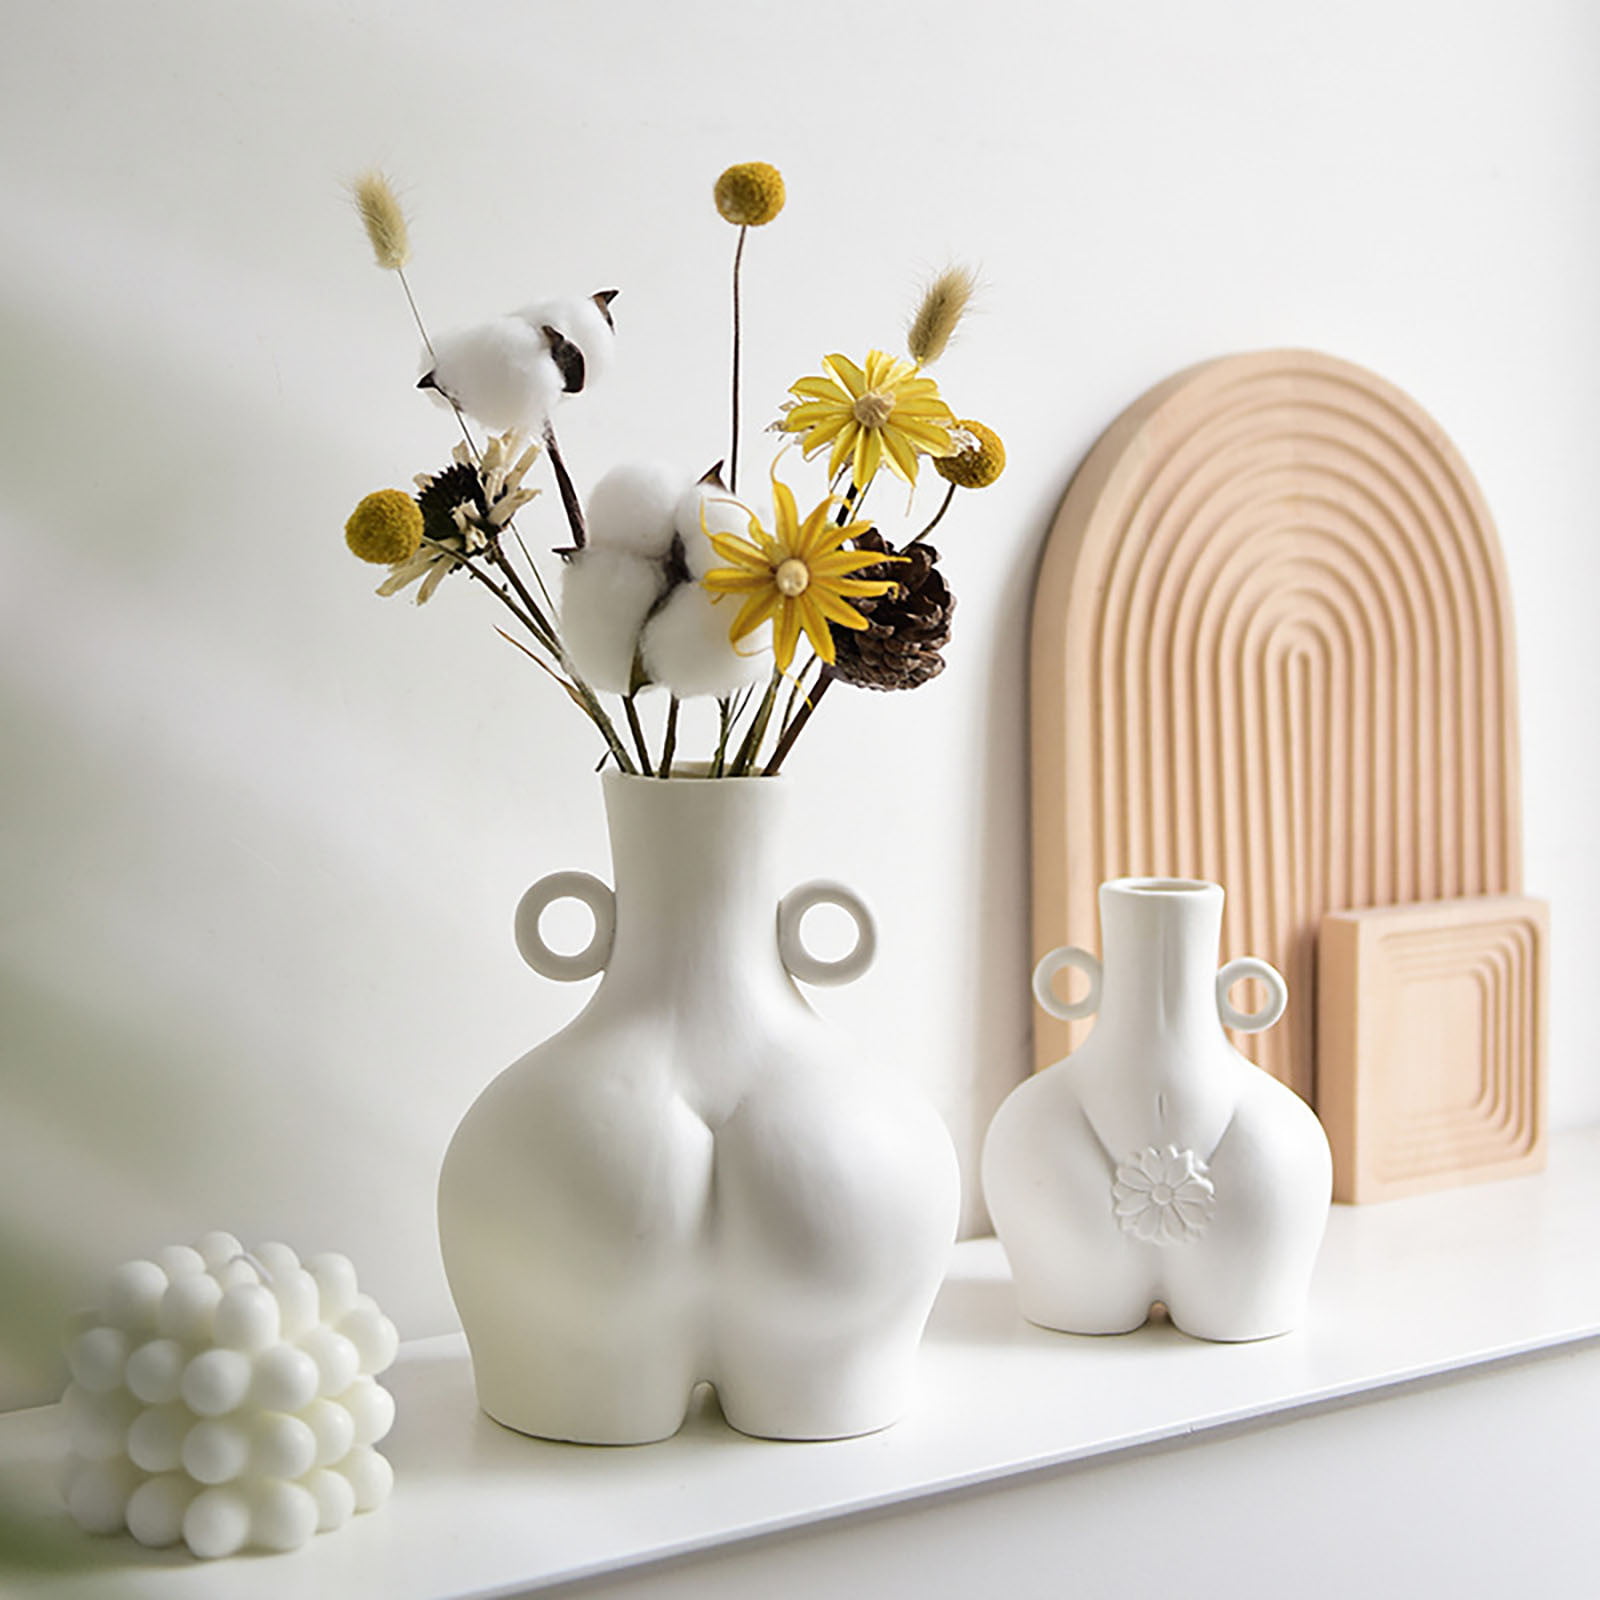 Details about   Ceramics Female Vase Body Art Design Sculpture Home Decor Flower Ornament 